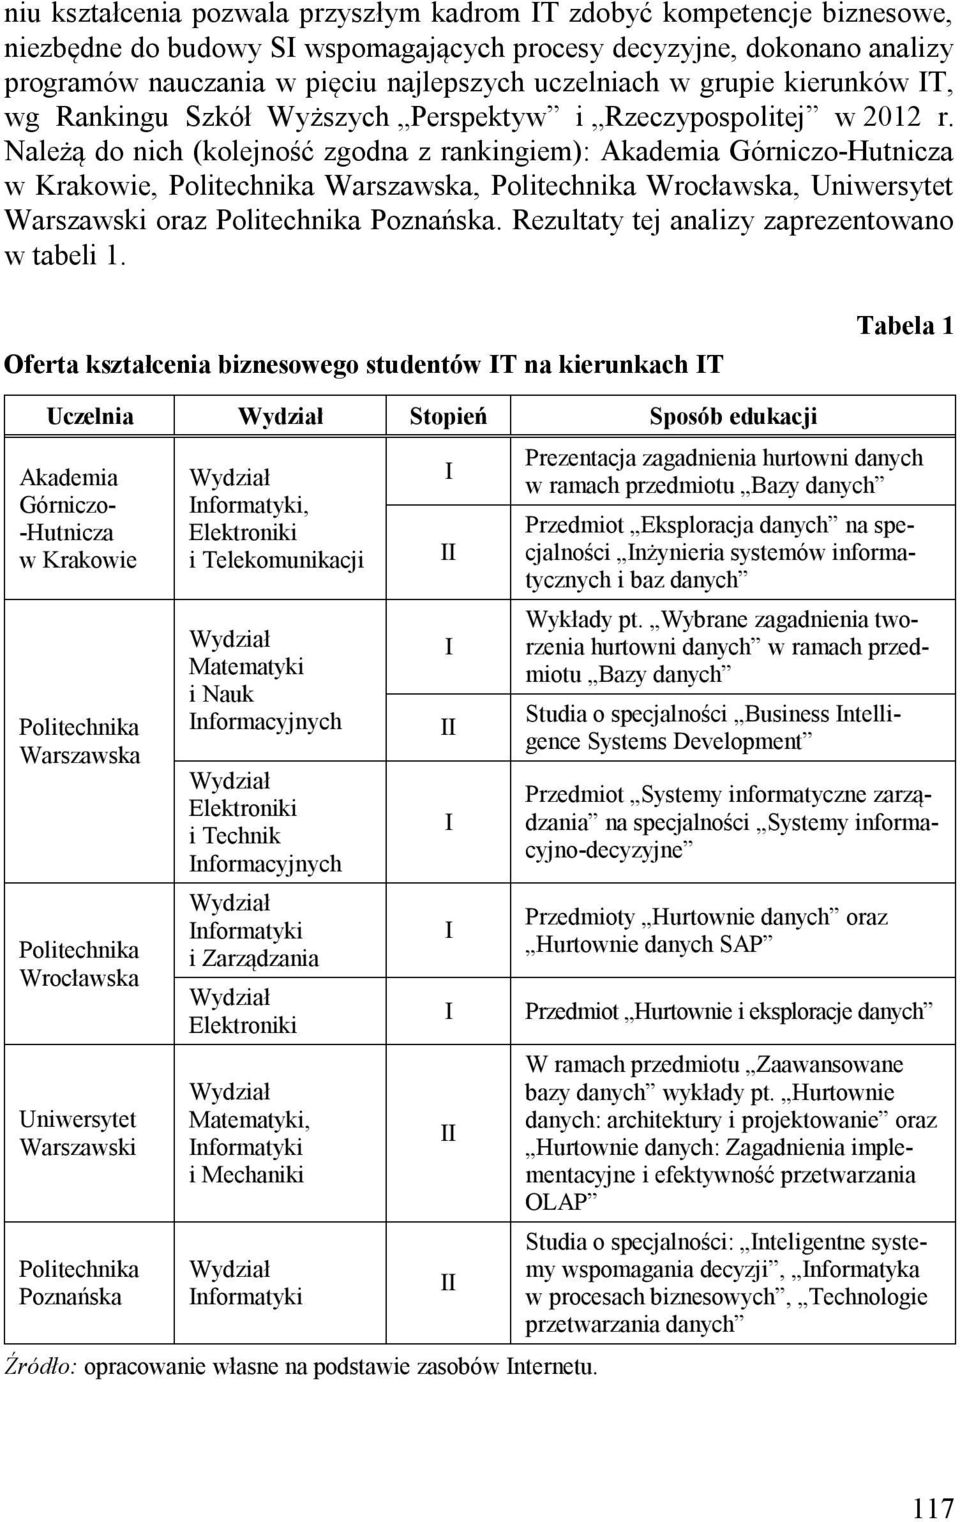 Należą do nich (kolejność zgodna z rankingiem): Akademia Górniczo-Hutnicza w Krakowie, Politechnika Warszawska, Politechnika Wrocławska, Warszawski oraz Politechnika Poznańska.